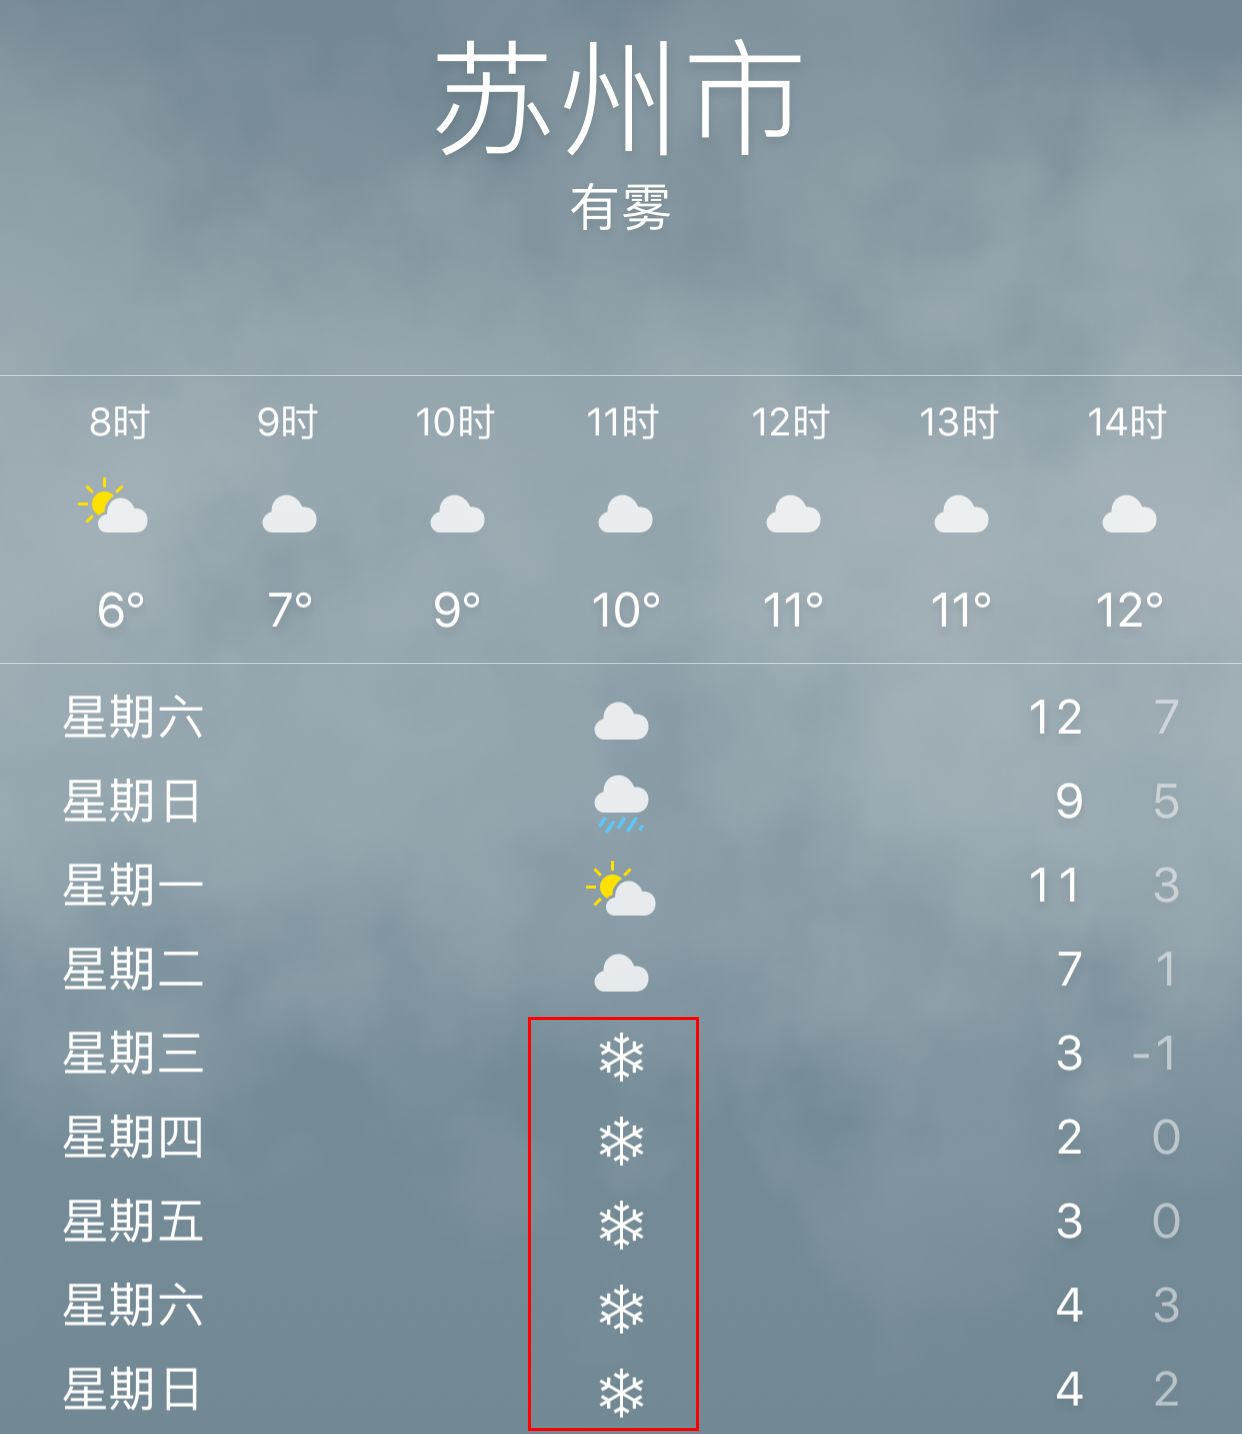 苏州天气40天图片